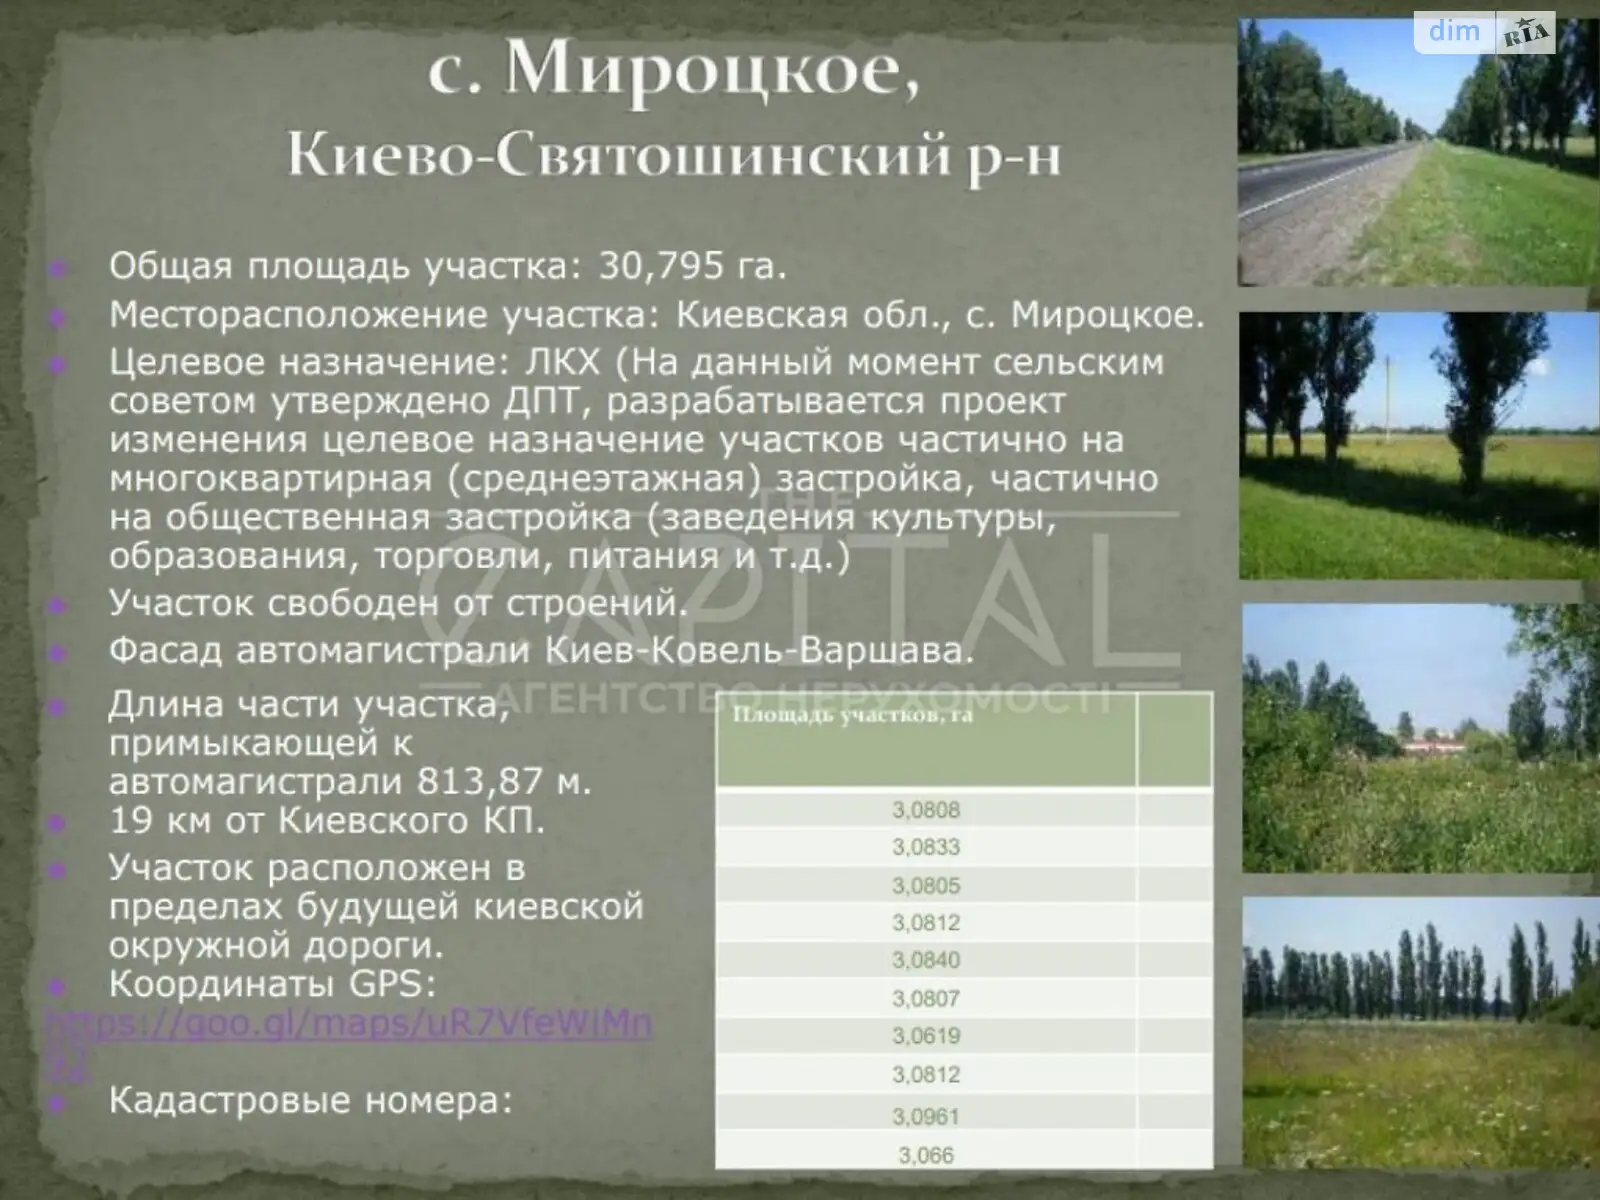 Продается земельный участок 30795 соток в Киевской области - фото 2